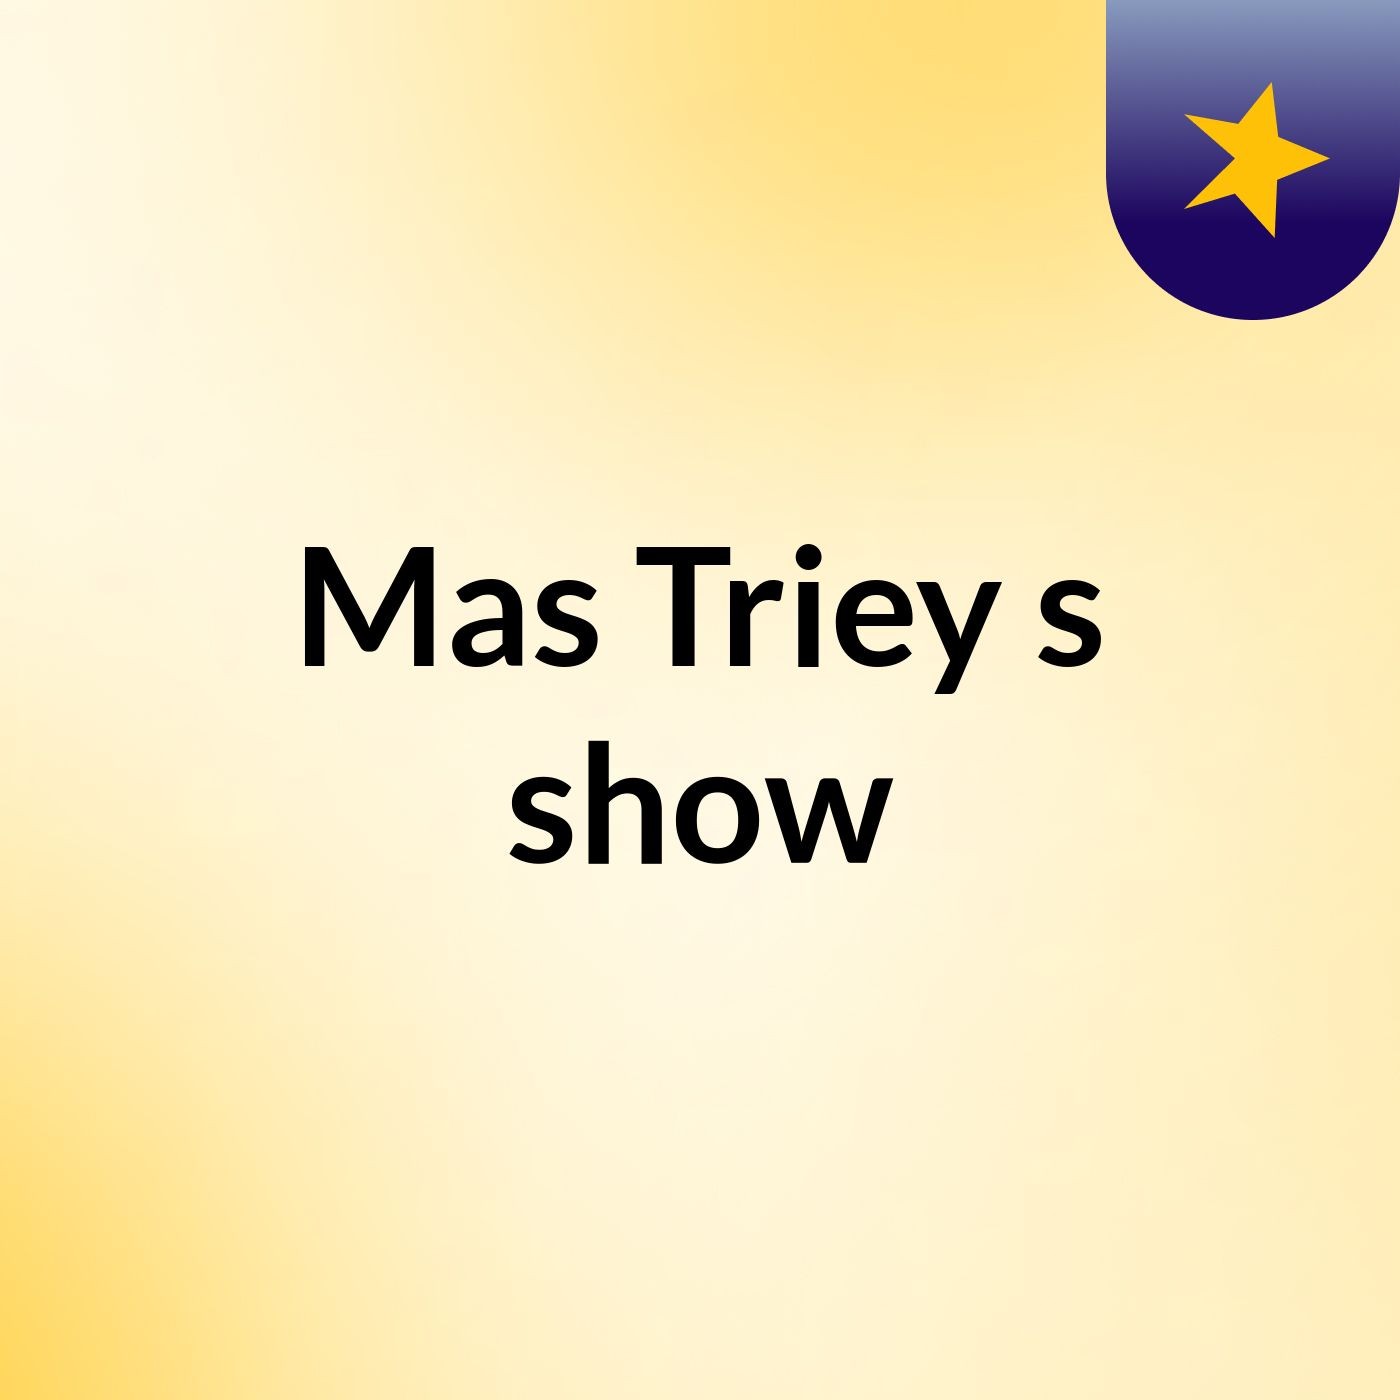 Mas Triey's show